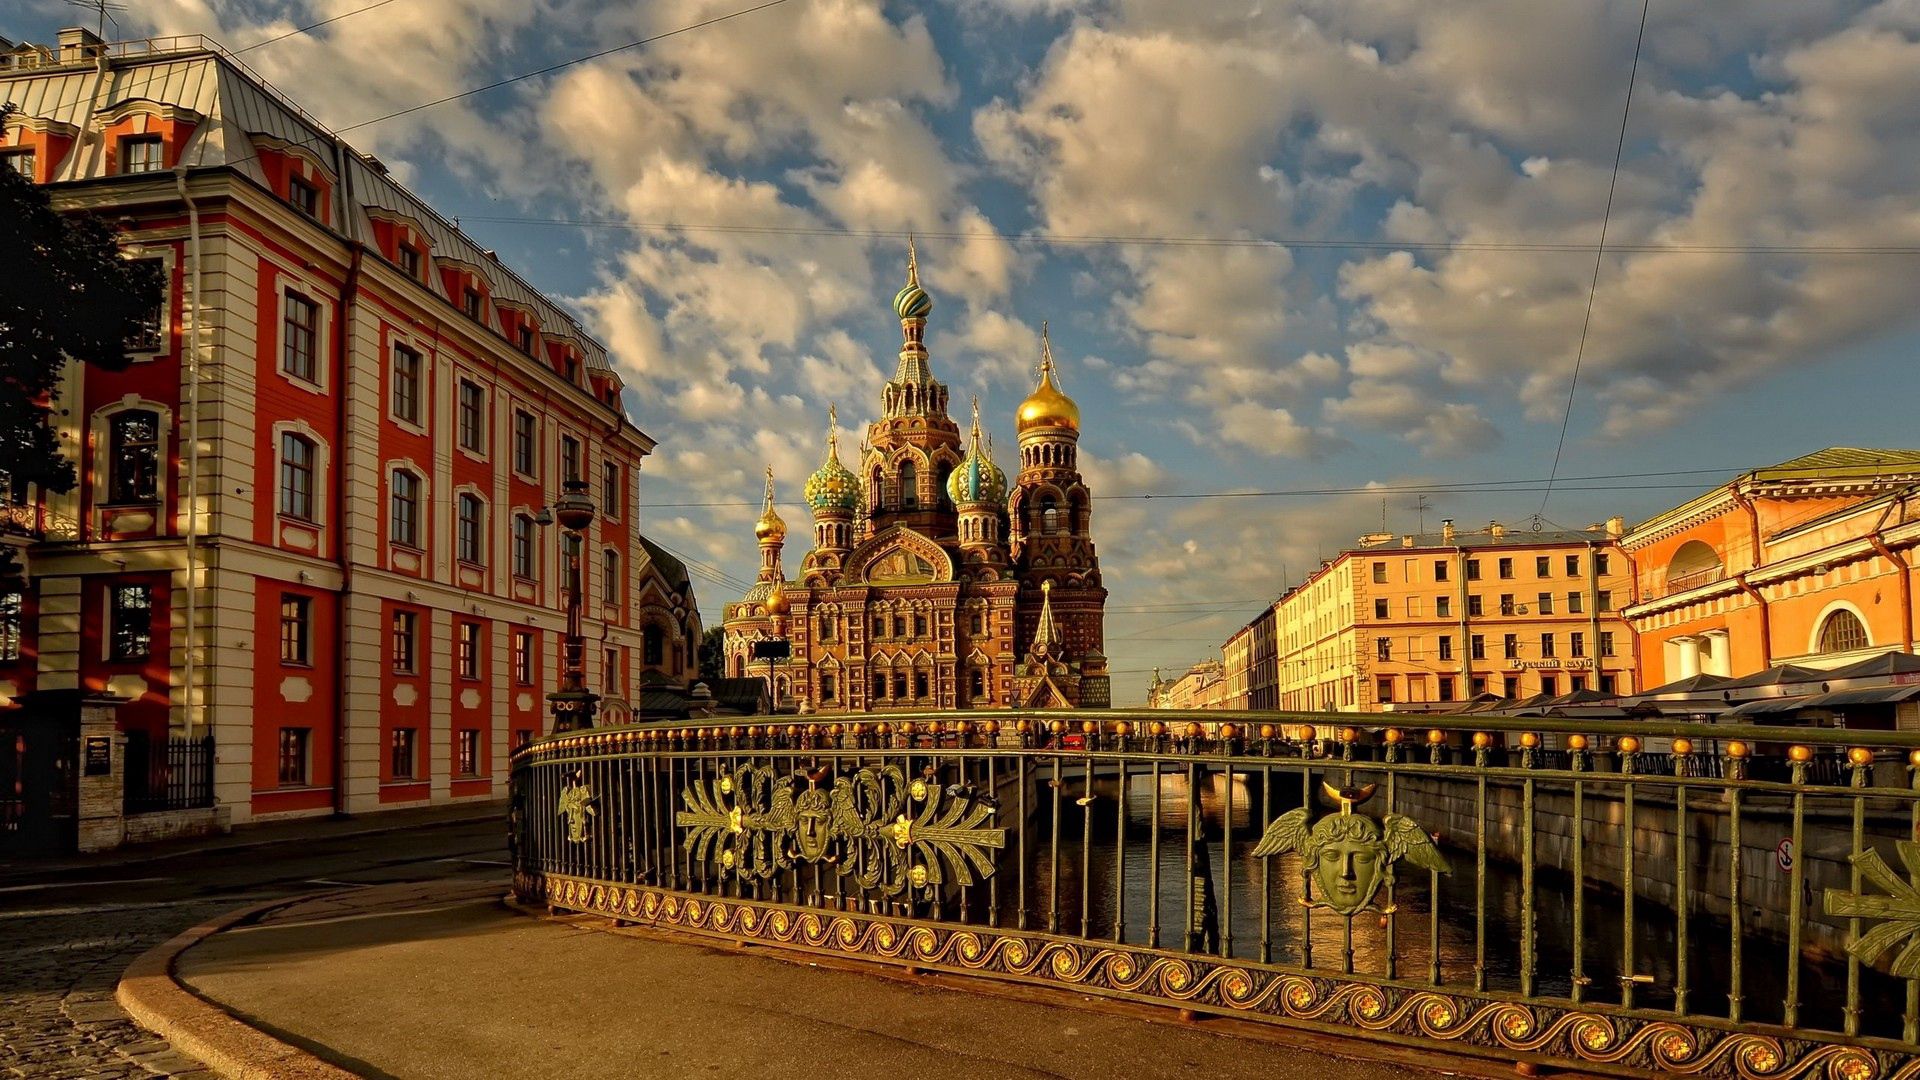 Популярные заставки и фоны Санкт Петербург на компьютер